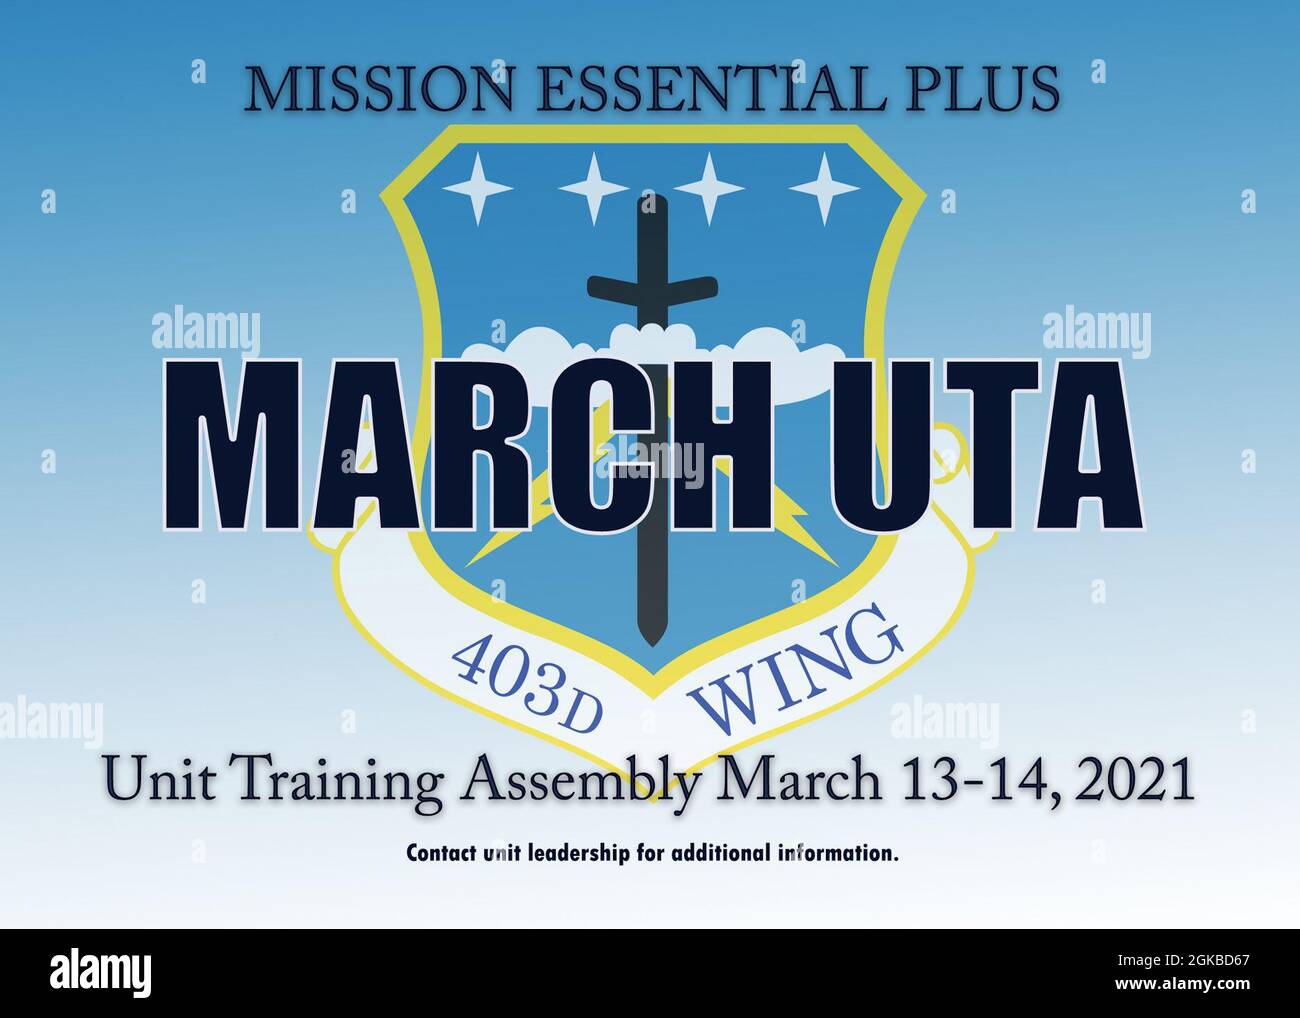 Il 403rd Wing March 13-14 Unit Training Assembly è stato designato come mission Essential Plus alla base dell'aeronautica militare Keesler, Mississippi. Per ulteriori informazioni, gli airmen devono contattare la dirigenza dell'unità. Foto Stock